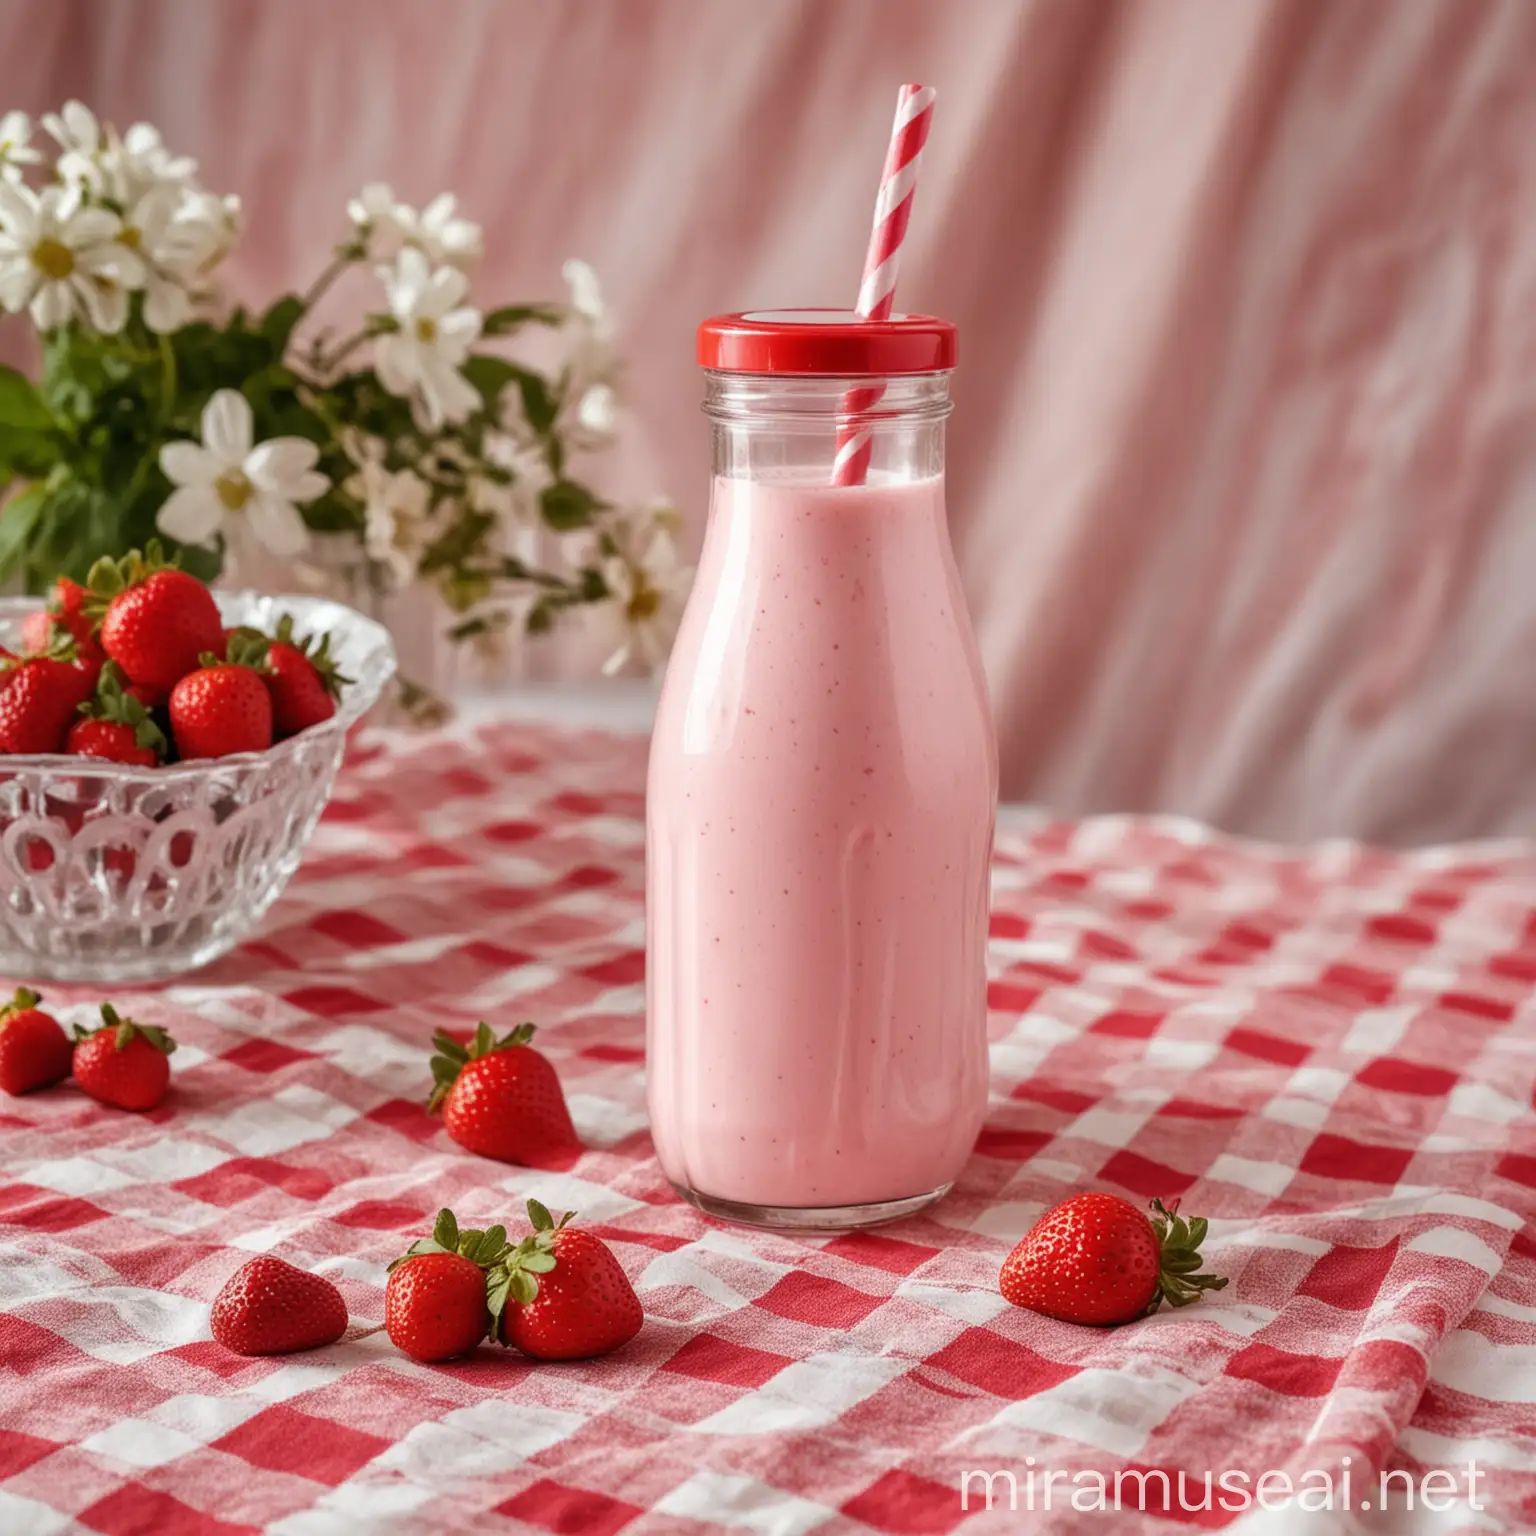 Refreshing Strawberry Milkshake on Elegant Tablecloth